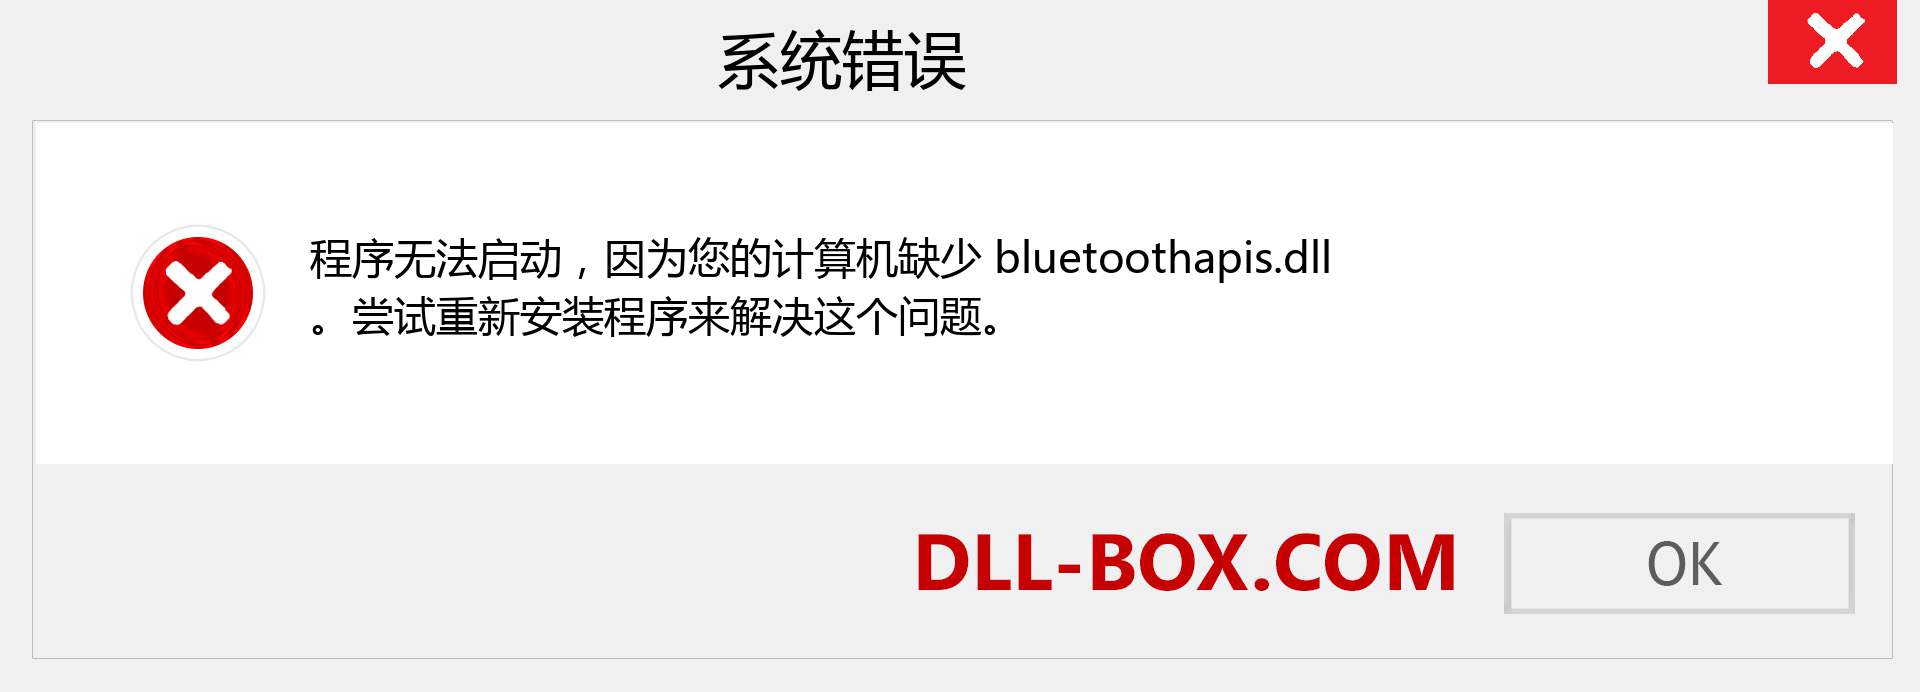 bluetoothapis.dll 文件丢失？。 适用于 Windows 7、8、10 的下载 - 修复 Windows、照片、图像上的 bluetoothapis dll 丢失错误